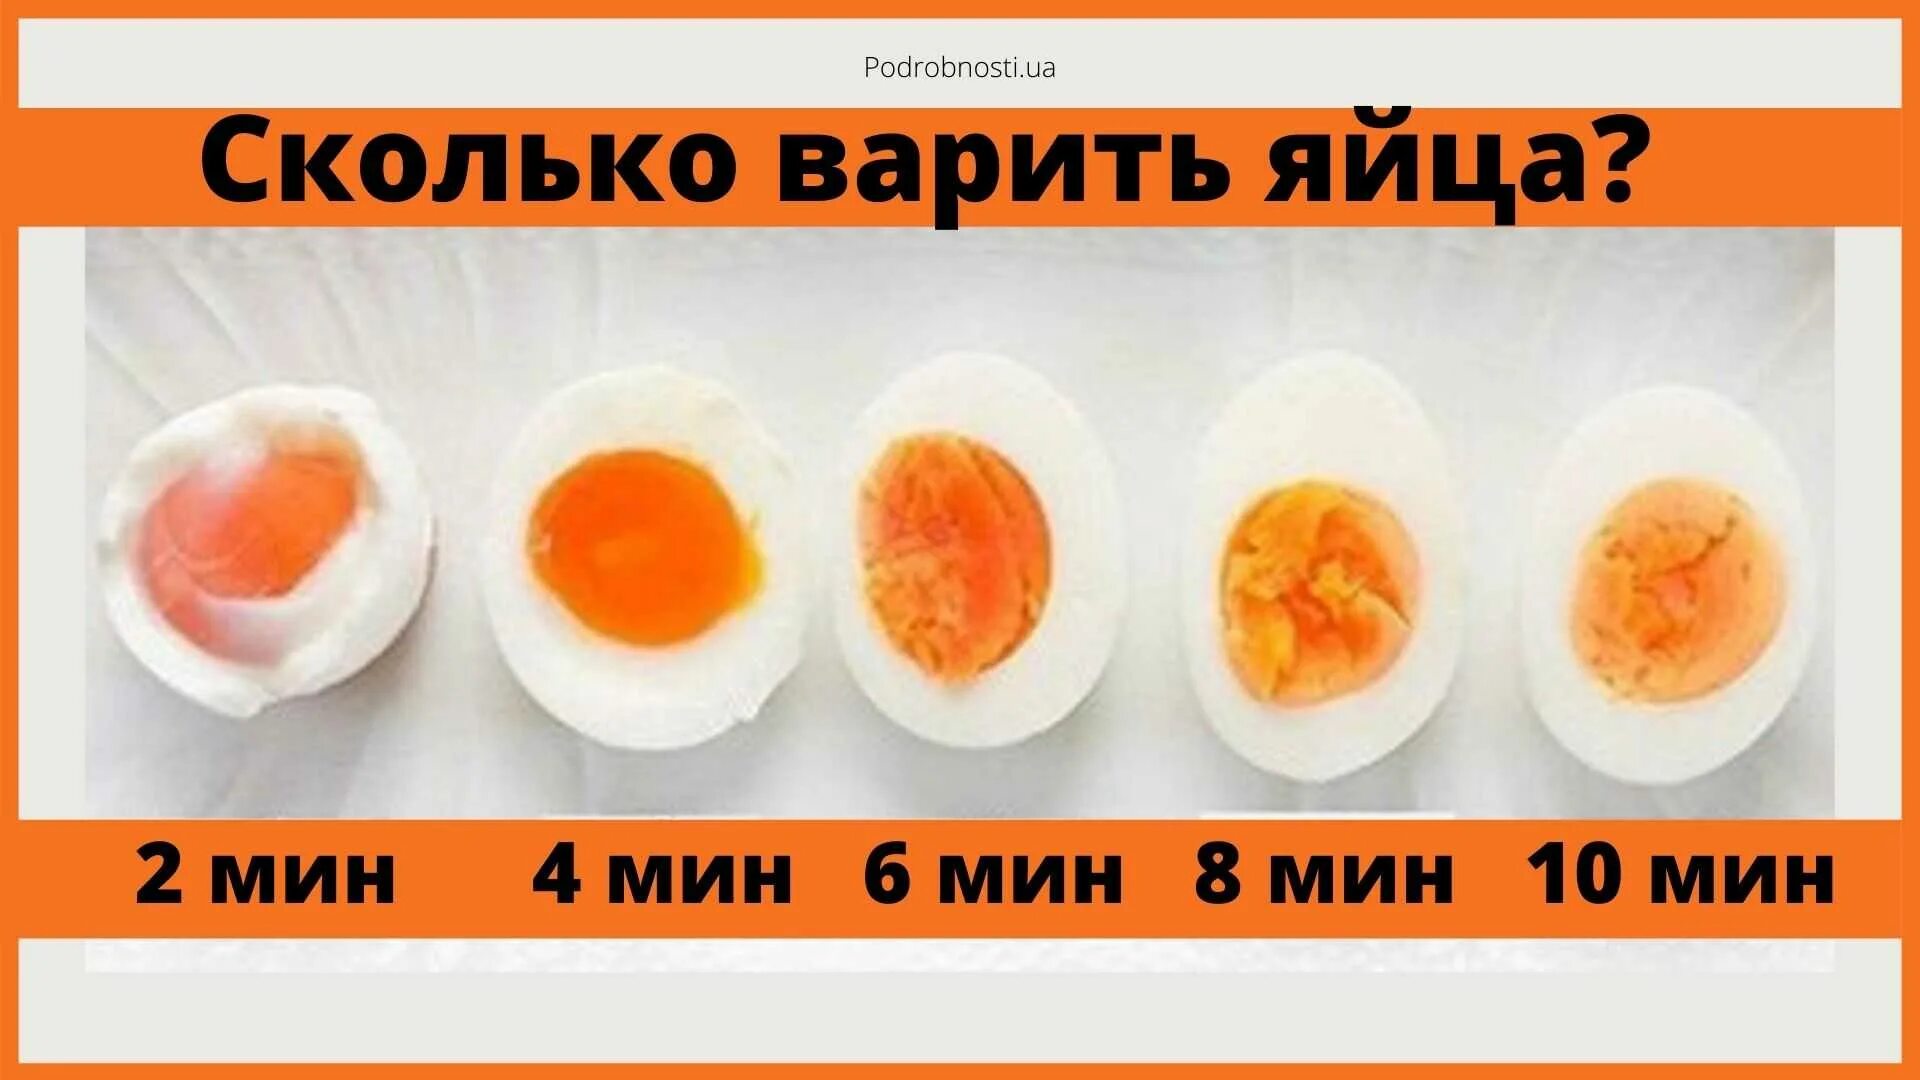 Сколько нужно варить яйца до полного. Сколько варить яйца. Сколько варить яицо всмятку. Сколько варить яйца в смчткк. Яйцо в смчтку сколтко вприть.